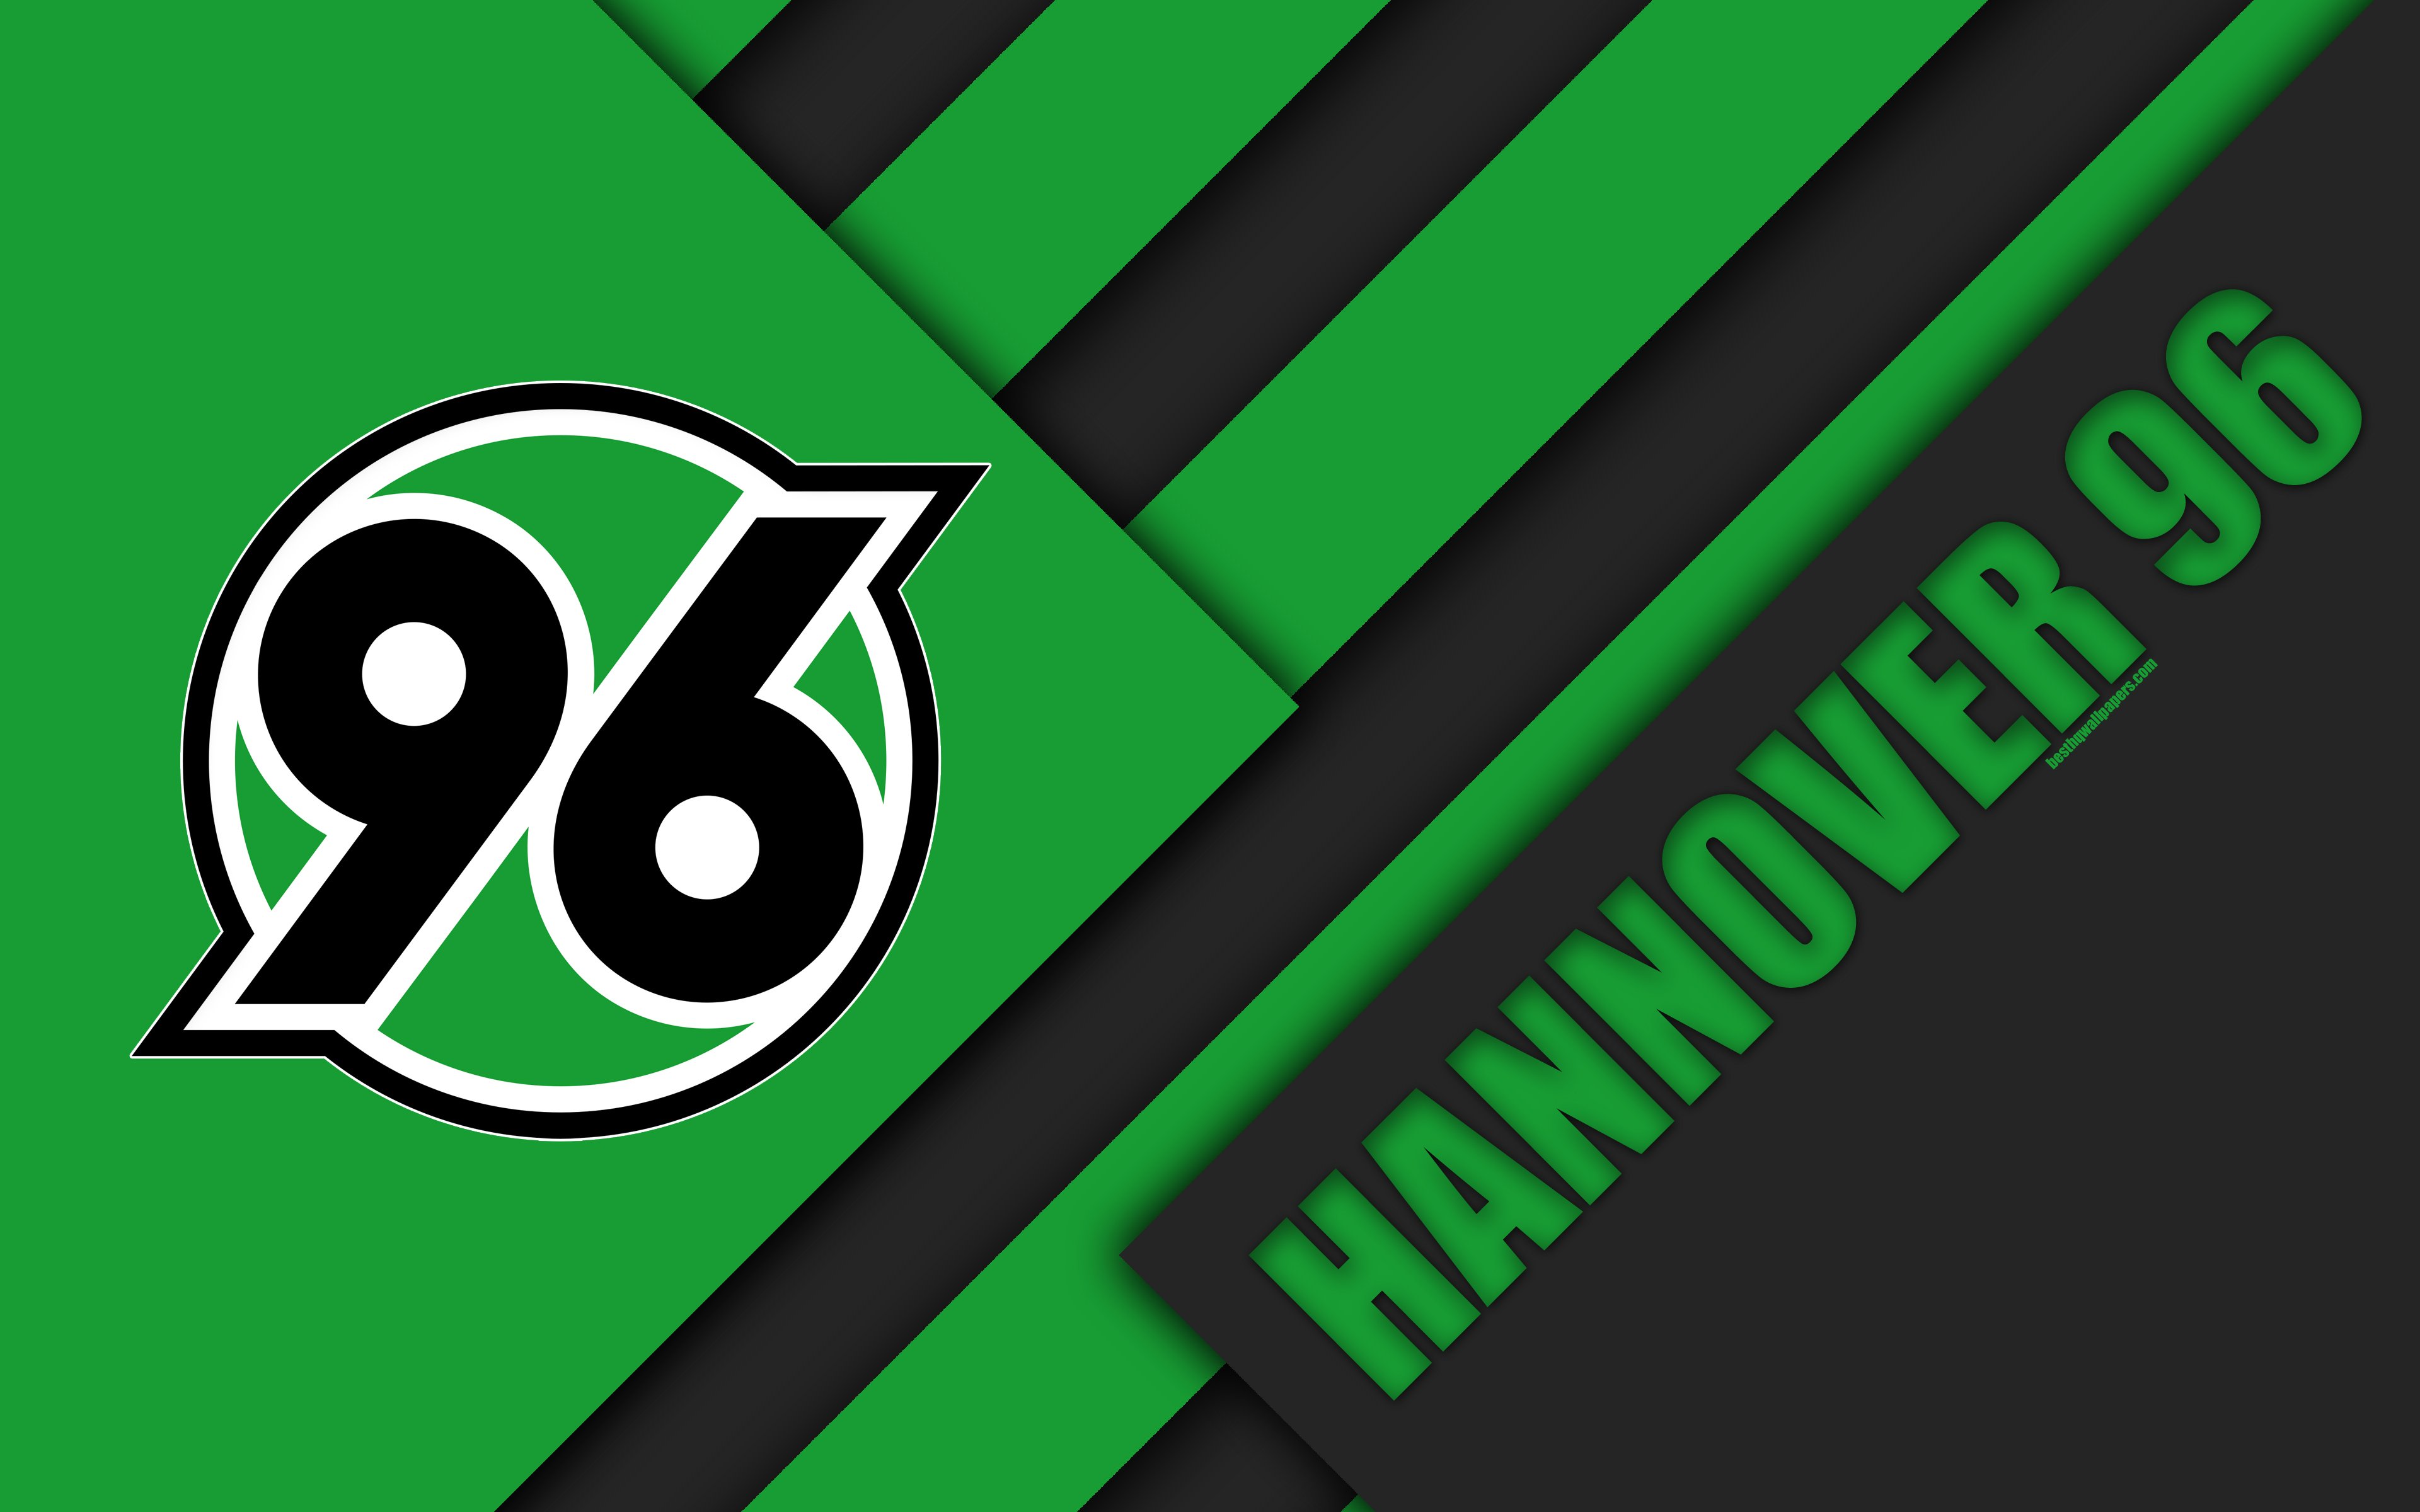 Download wallpaper Hannover 96 FC, 4k, material design, green black